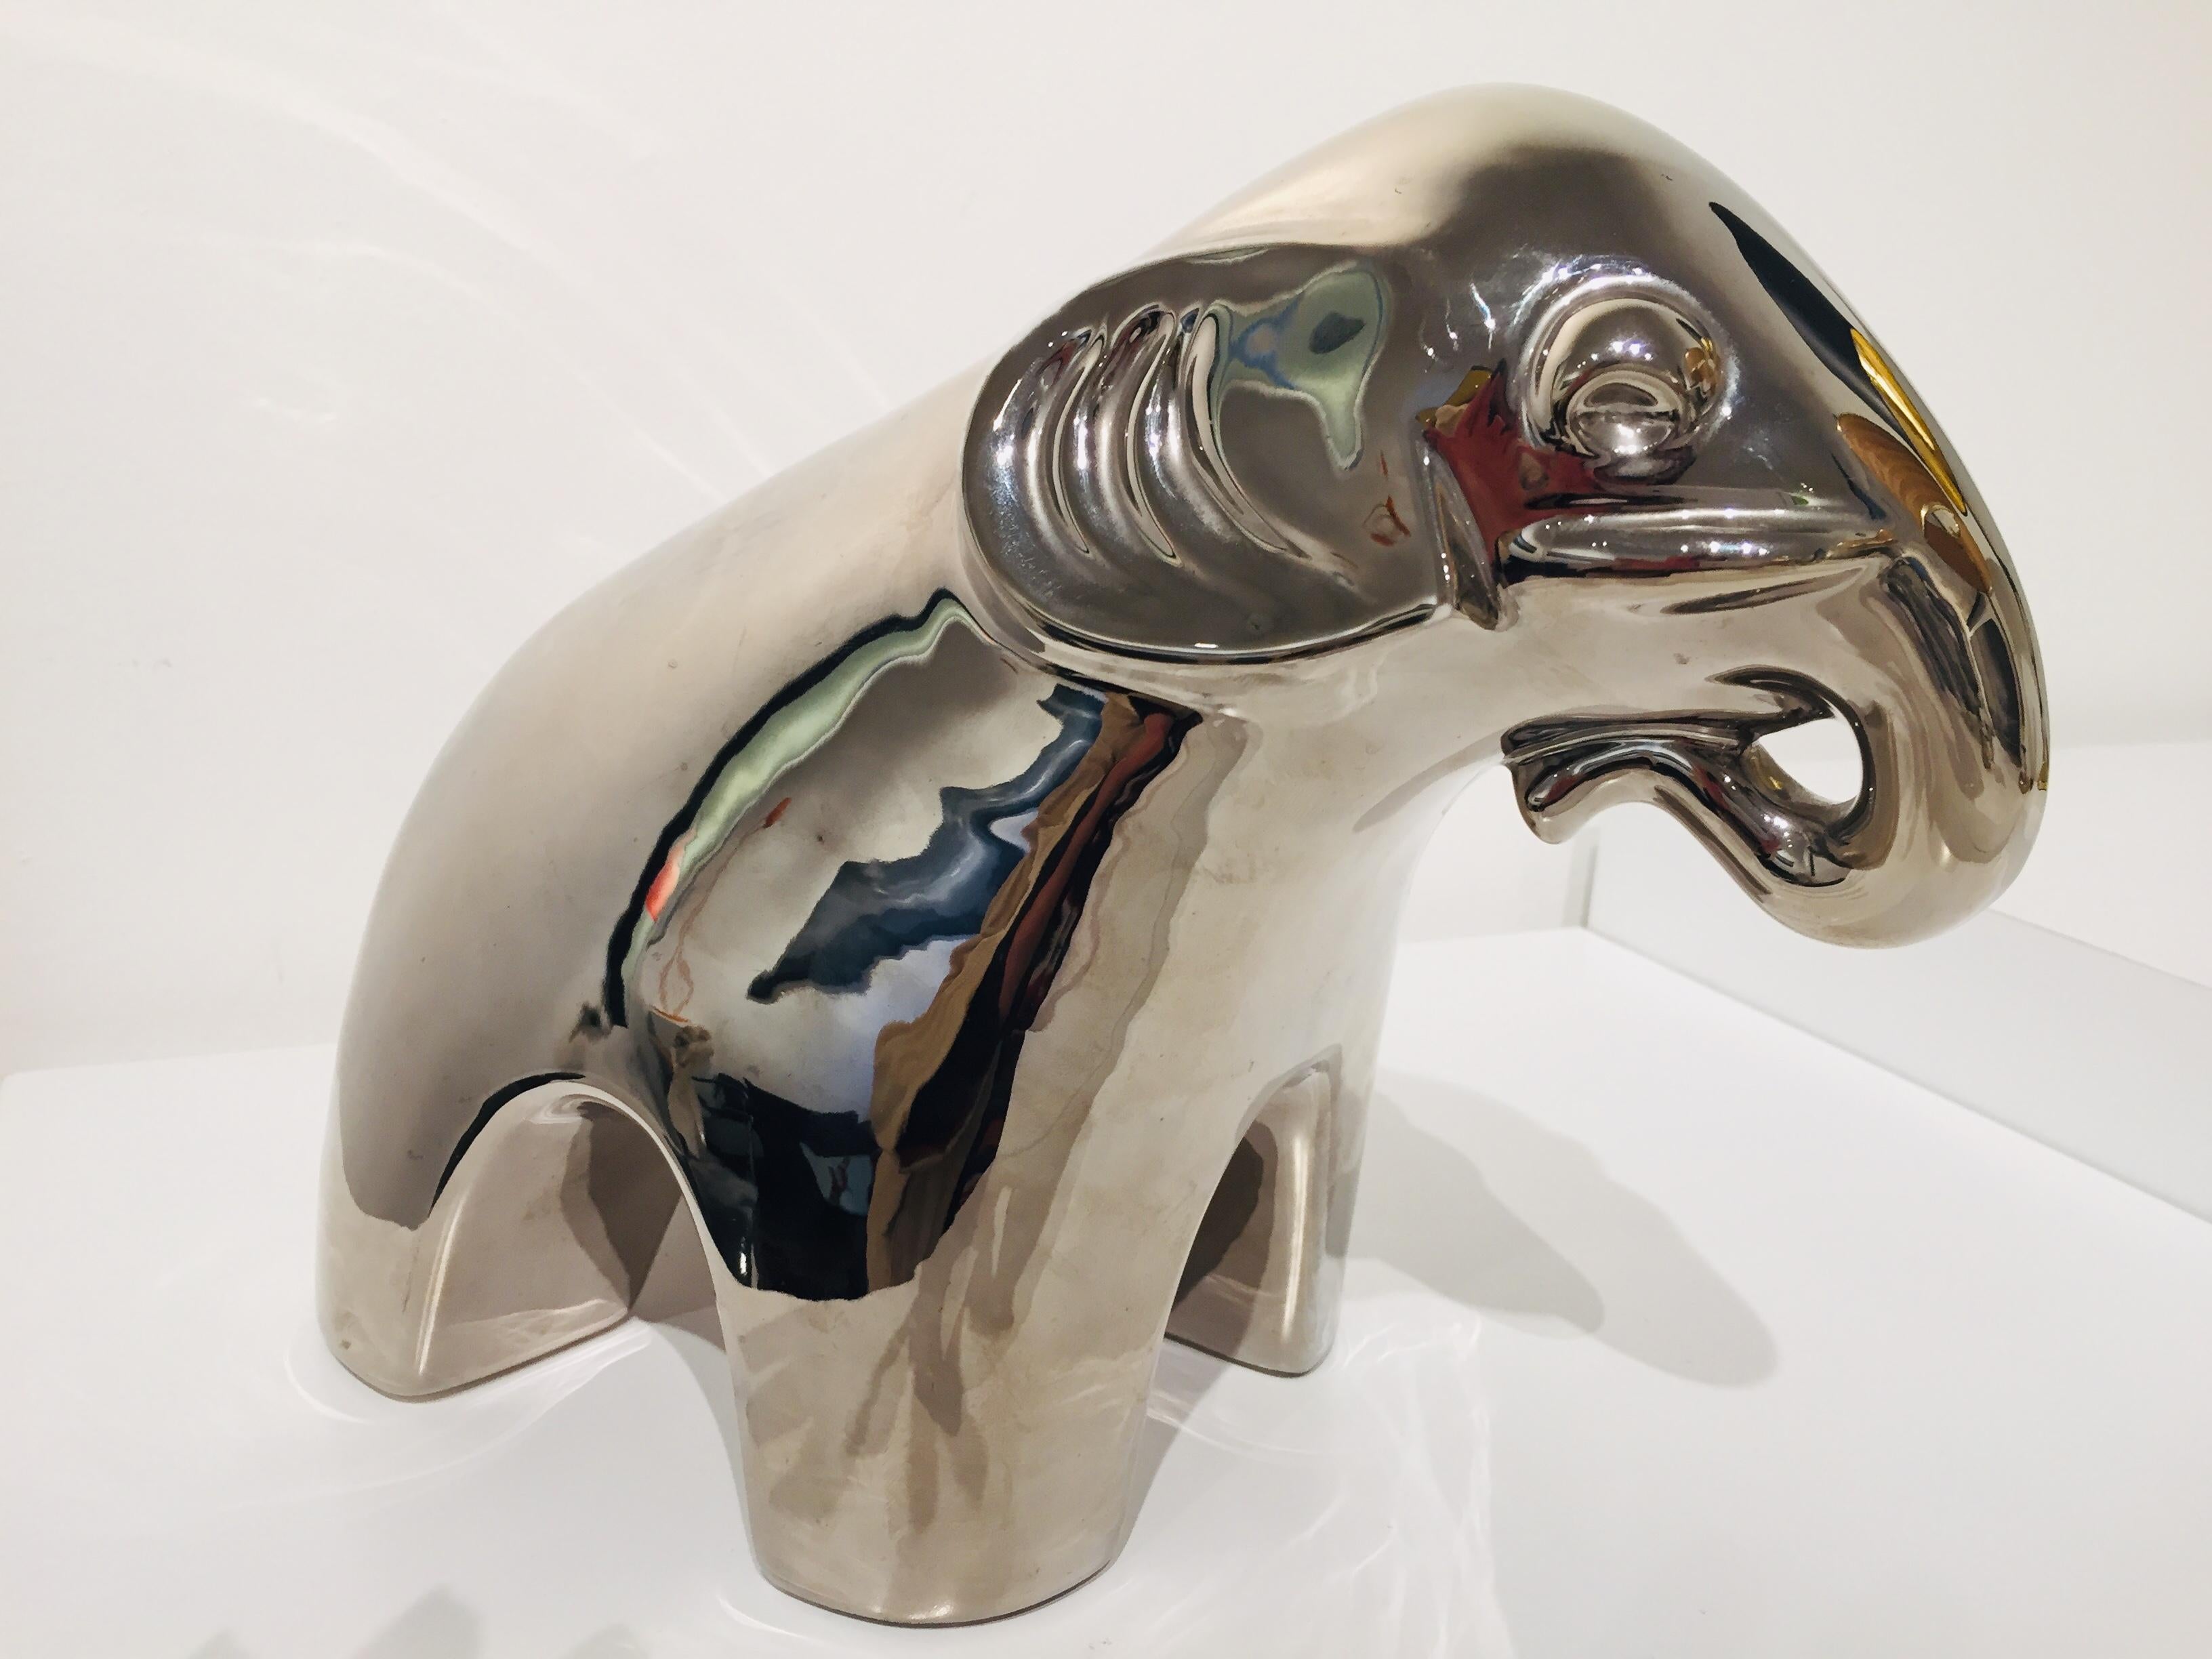 Éléphant contemporain en céramique avec finition miroir. La couleur varie légèrement en fonction de la lumière. Une certaine usure est légèrement visible sur les deux oreilles.